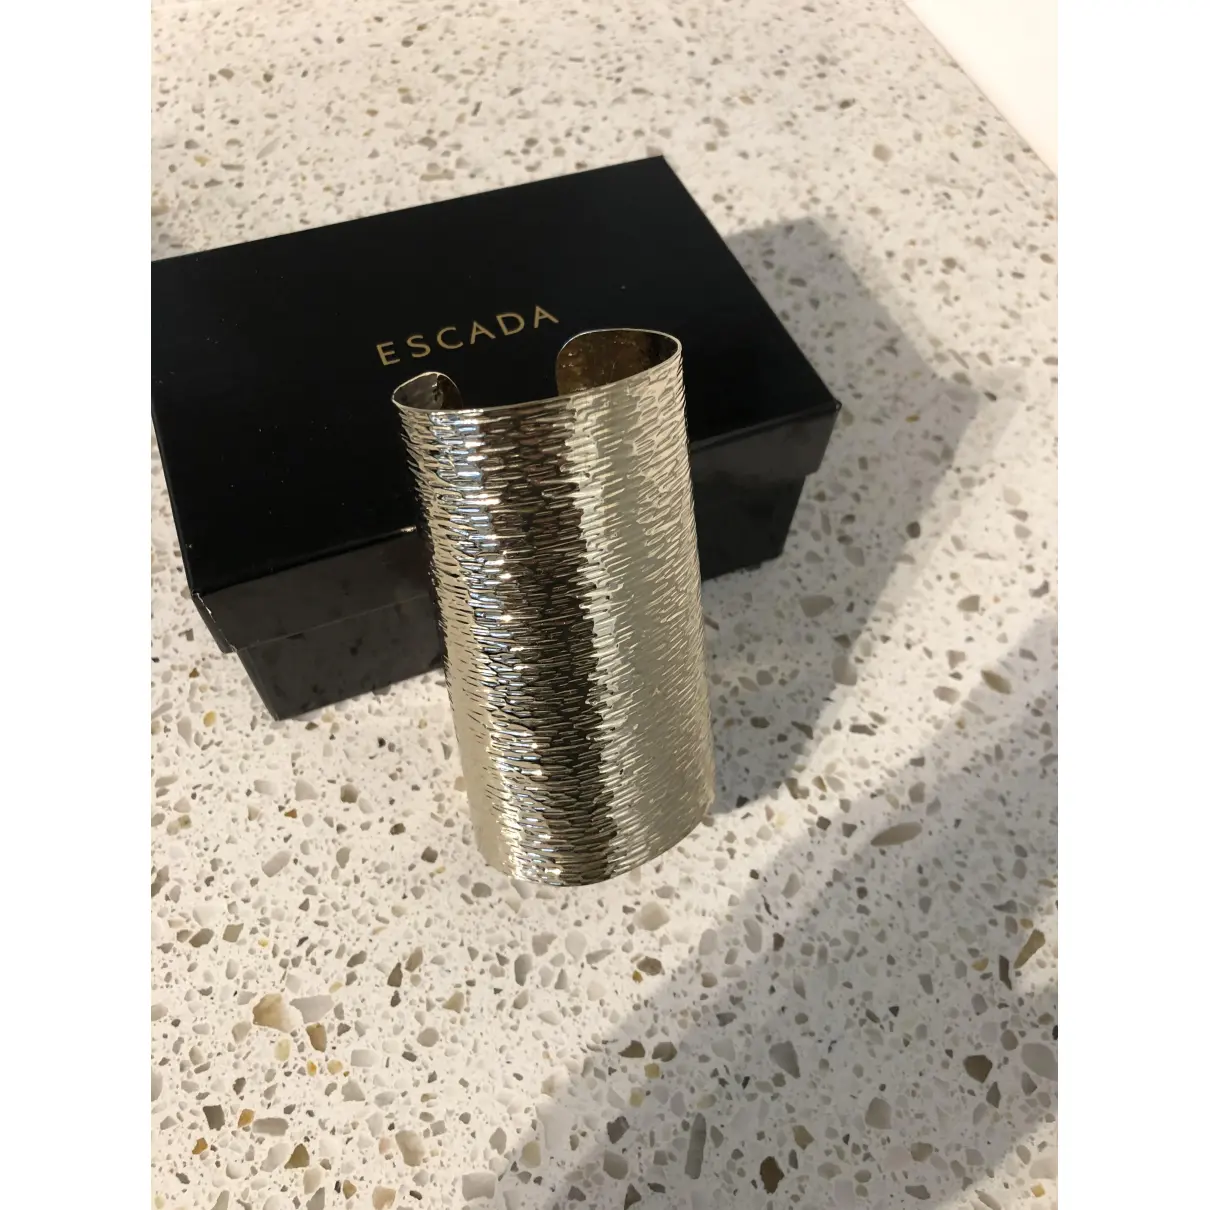 Buy Escada Gold Metal Bracelet online